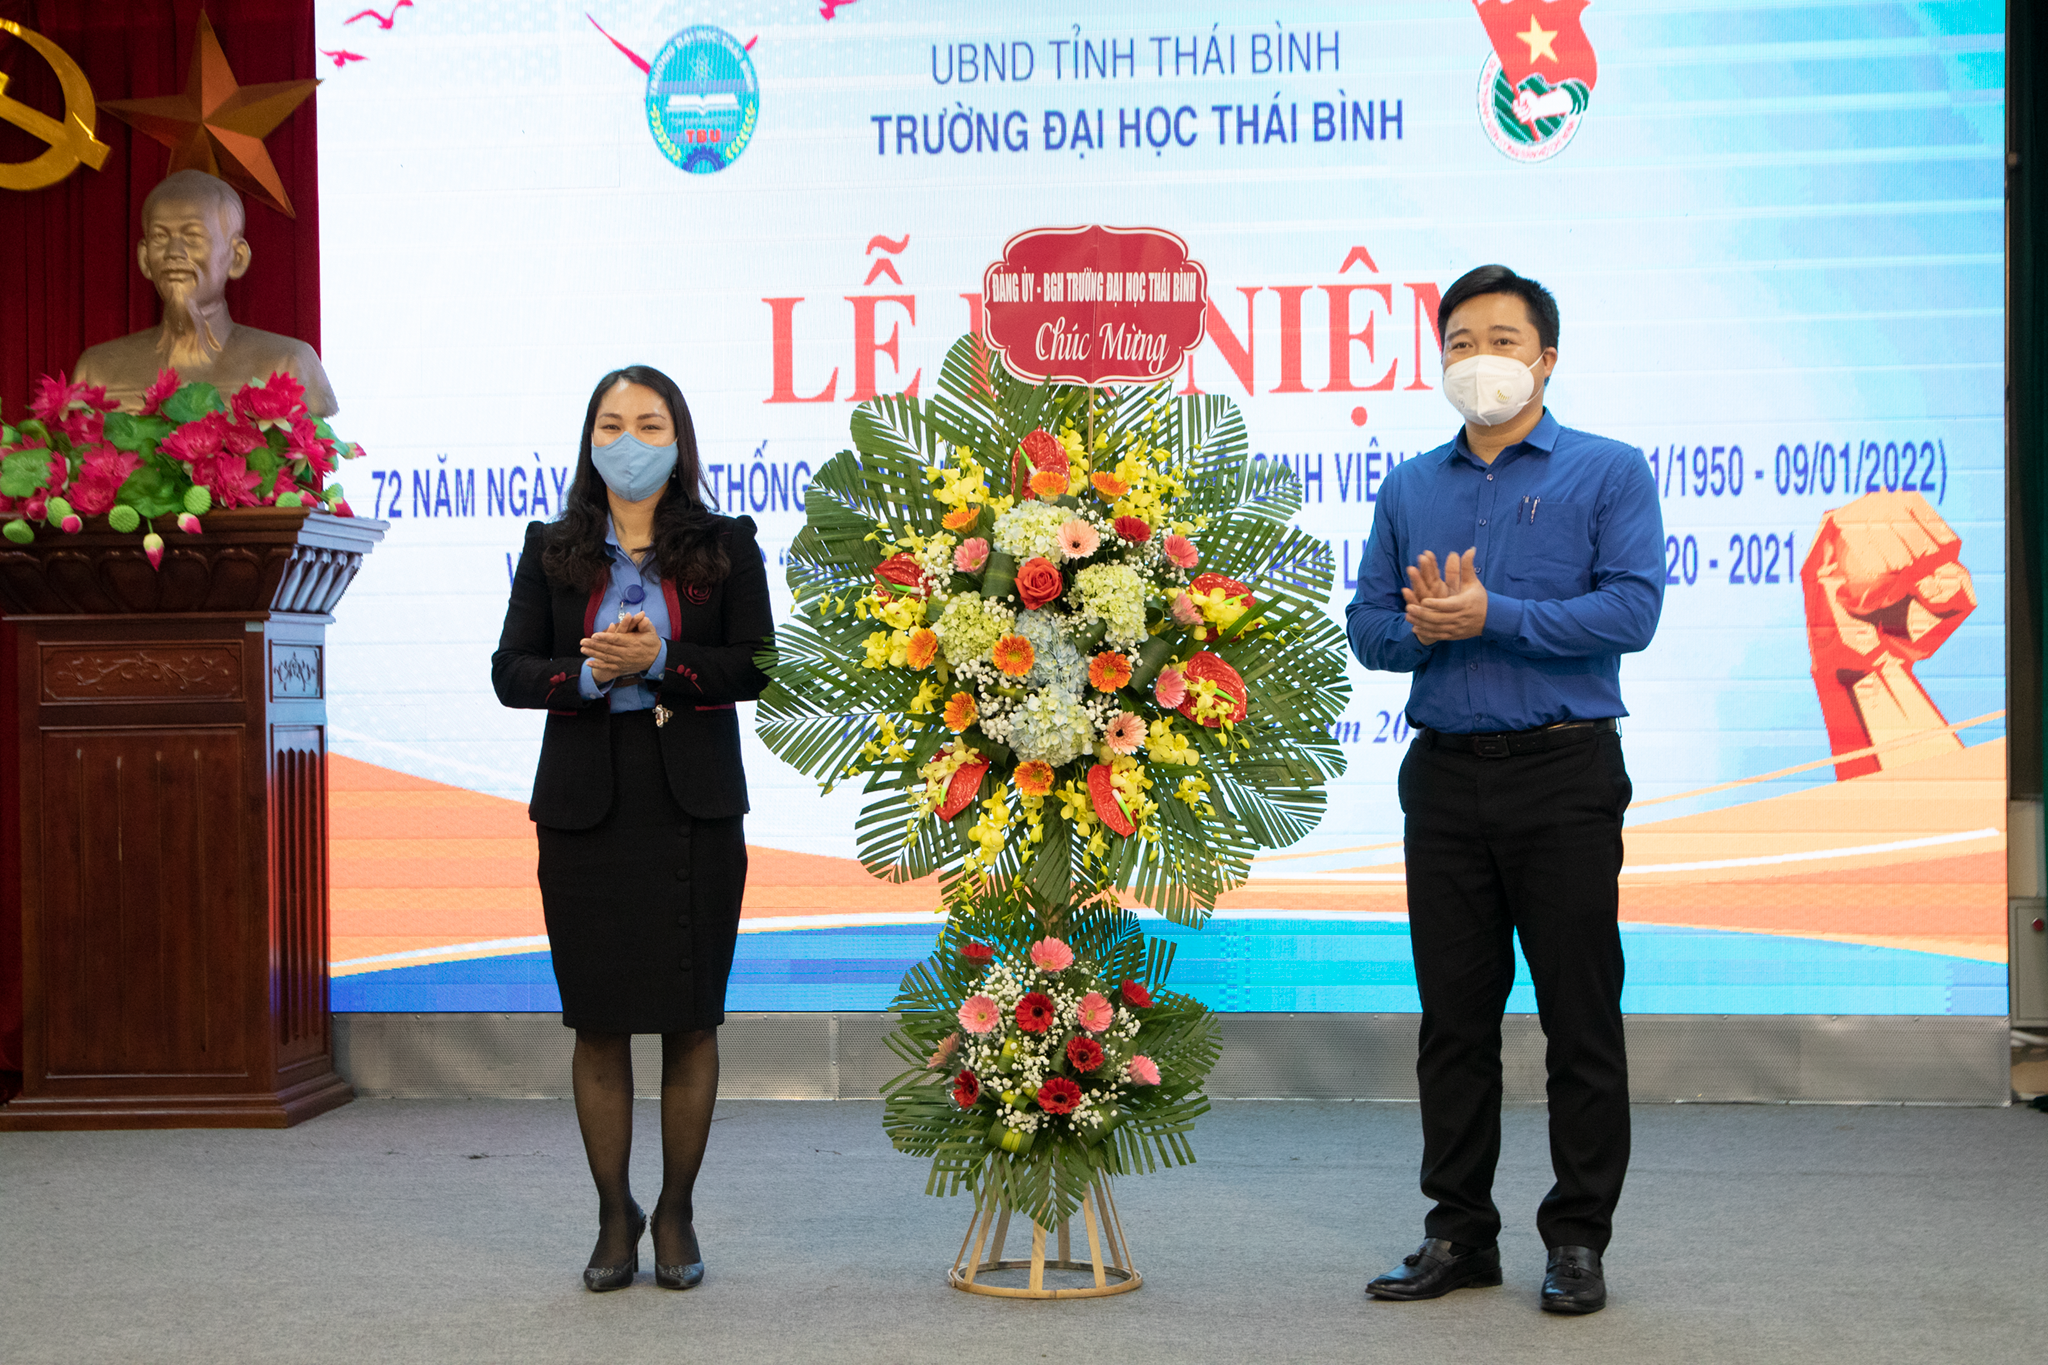 Trường Đại học Thái bình kỷ niệm 72 năm ngày truyền thống Học sinh, sinh viên và Tuyên dương “Sinh viên 5 tốt”, “Tập thể sv 5 tốt” “Học sinh 3 rèn luyện” cho Học sinh, sinh viên năm học 2021 - 2022